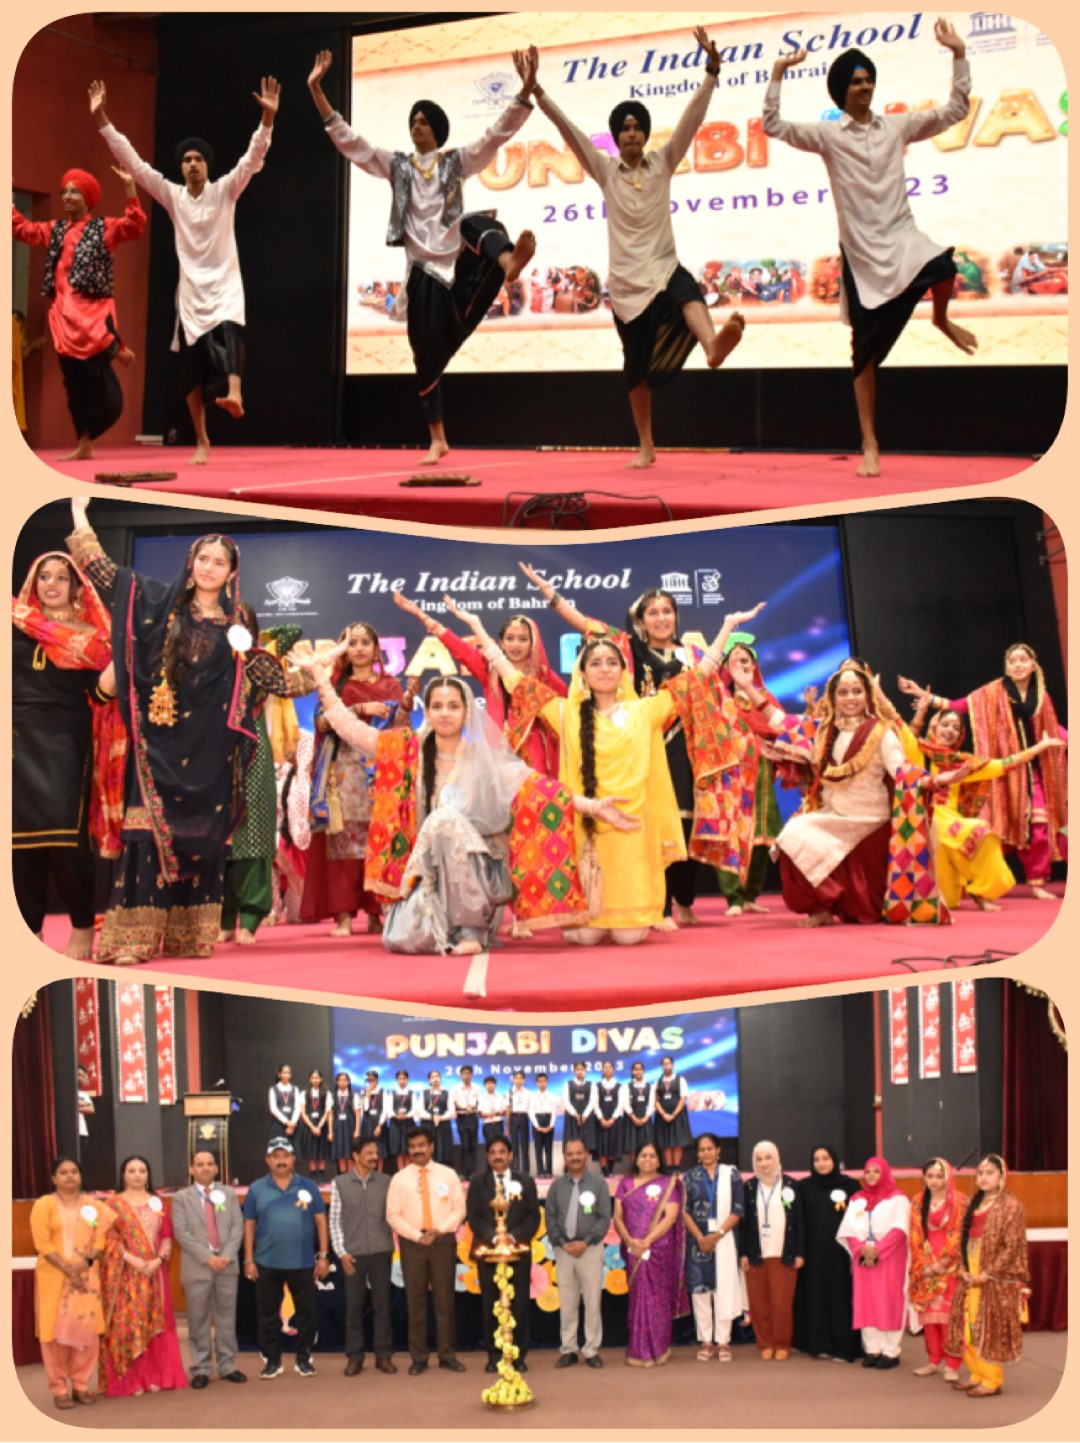 Indian School celebrates Punjabi Divas